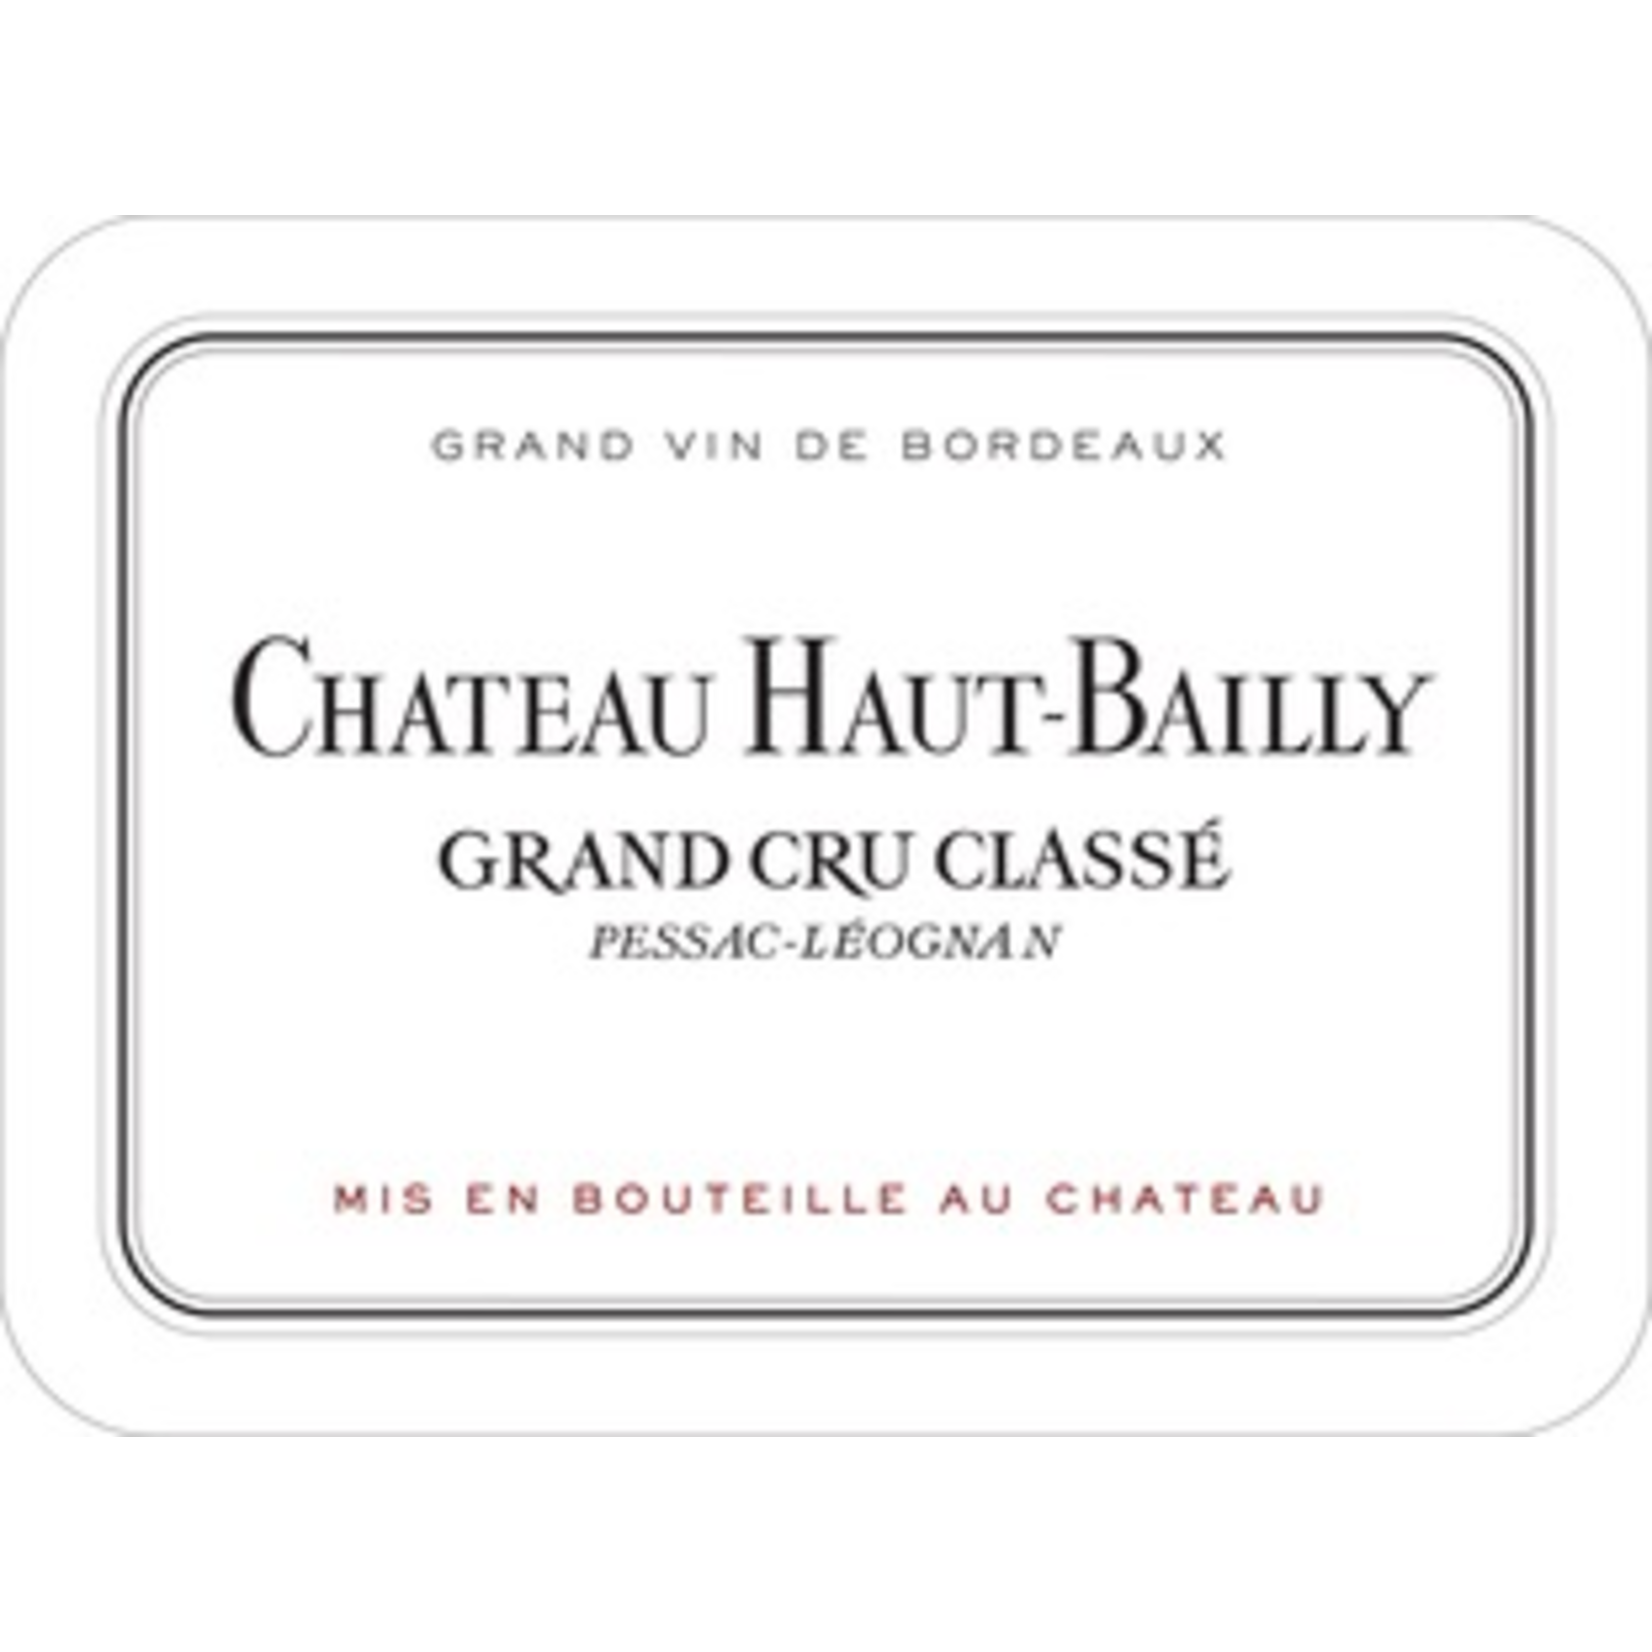 Wine Chateau Haut Bailly Grand Cru Classe 2008